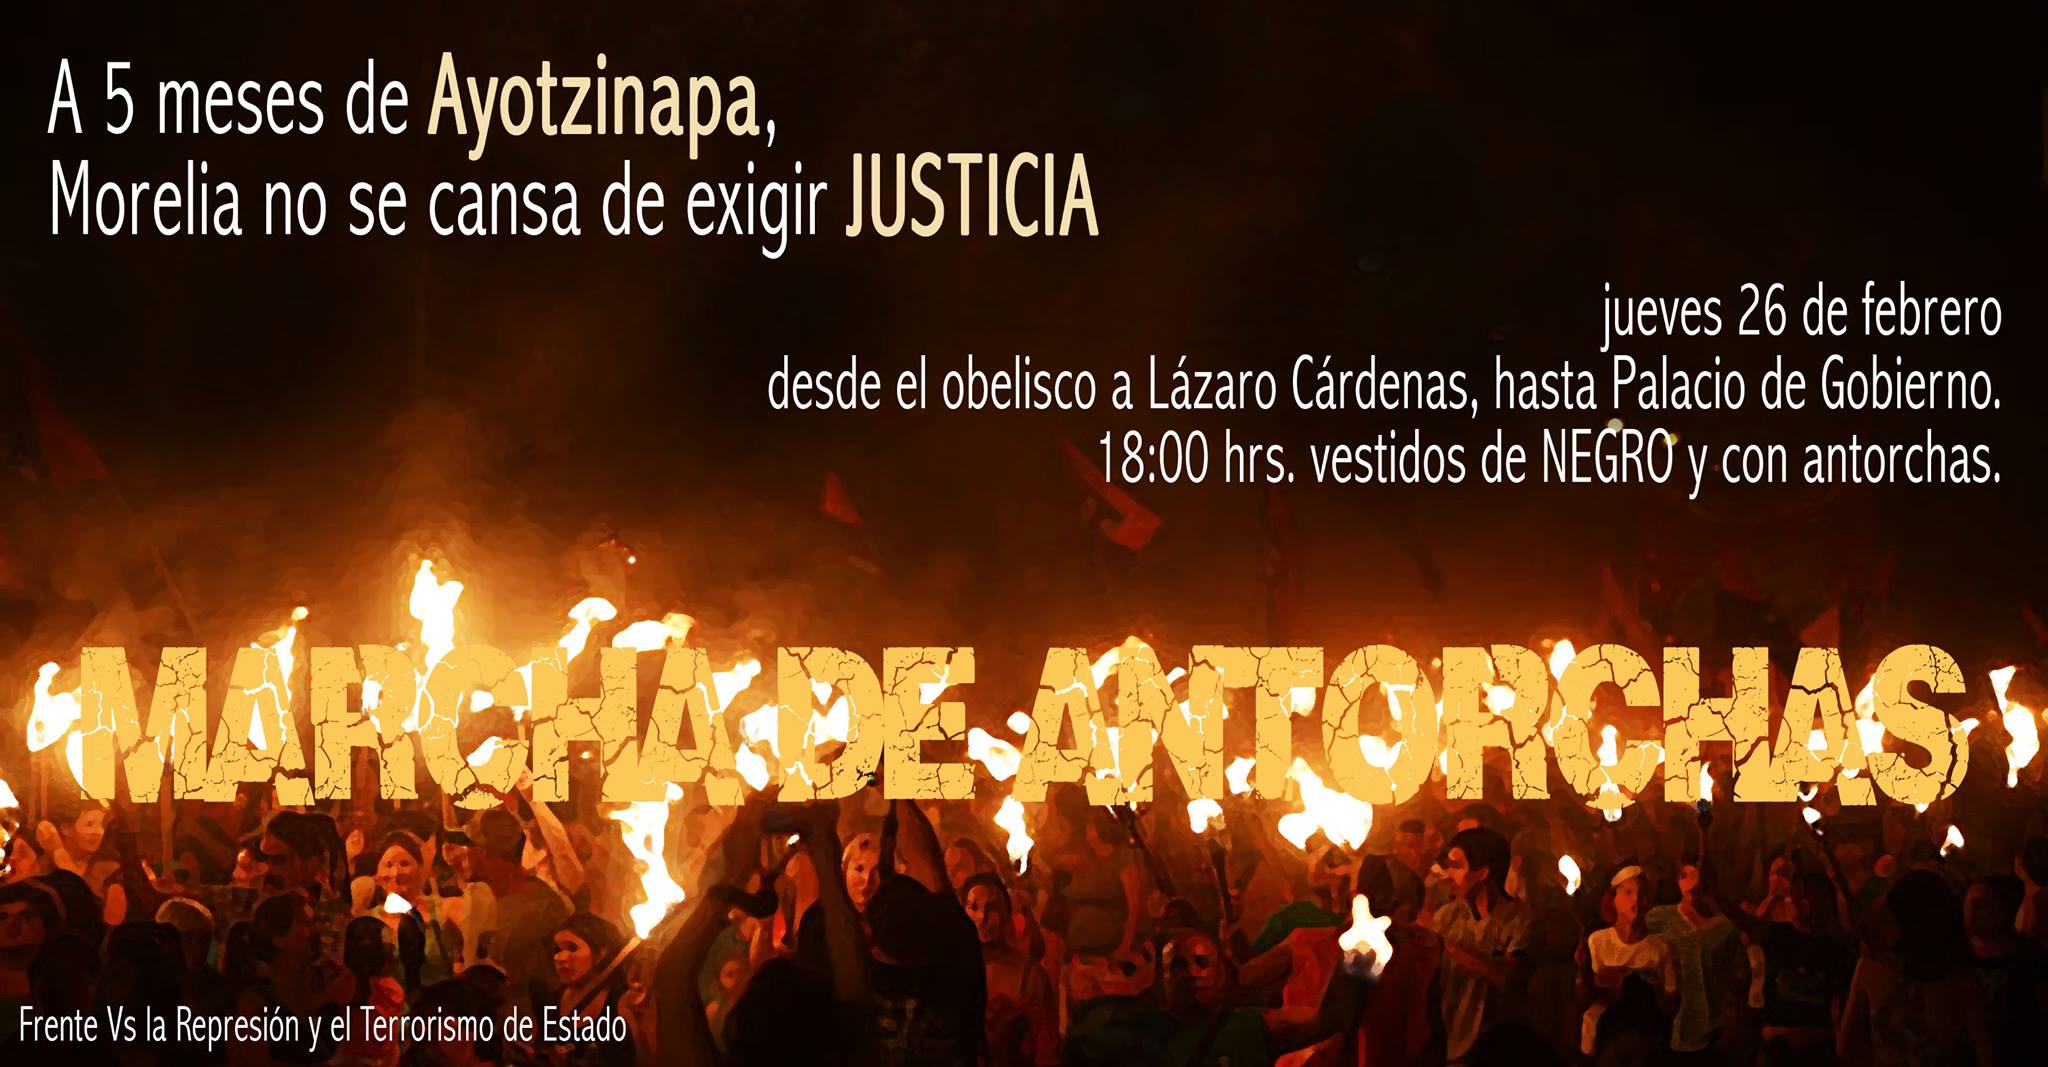 morelia manifestación antorchas ayotzinapa 5 meses